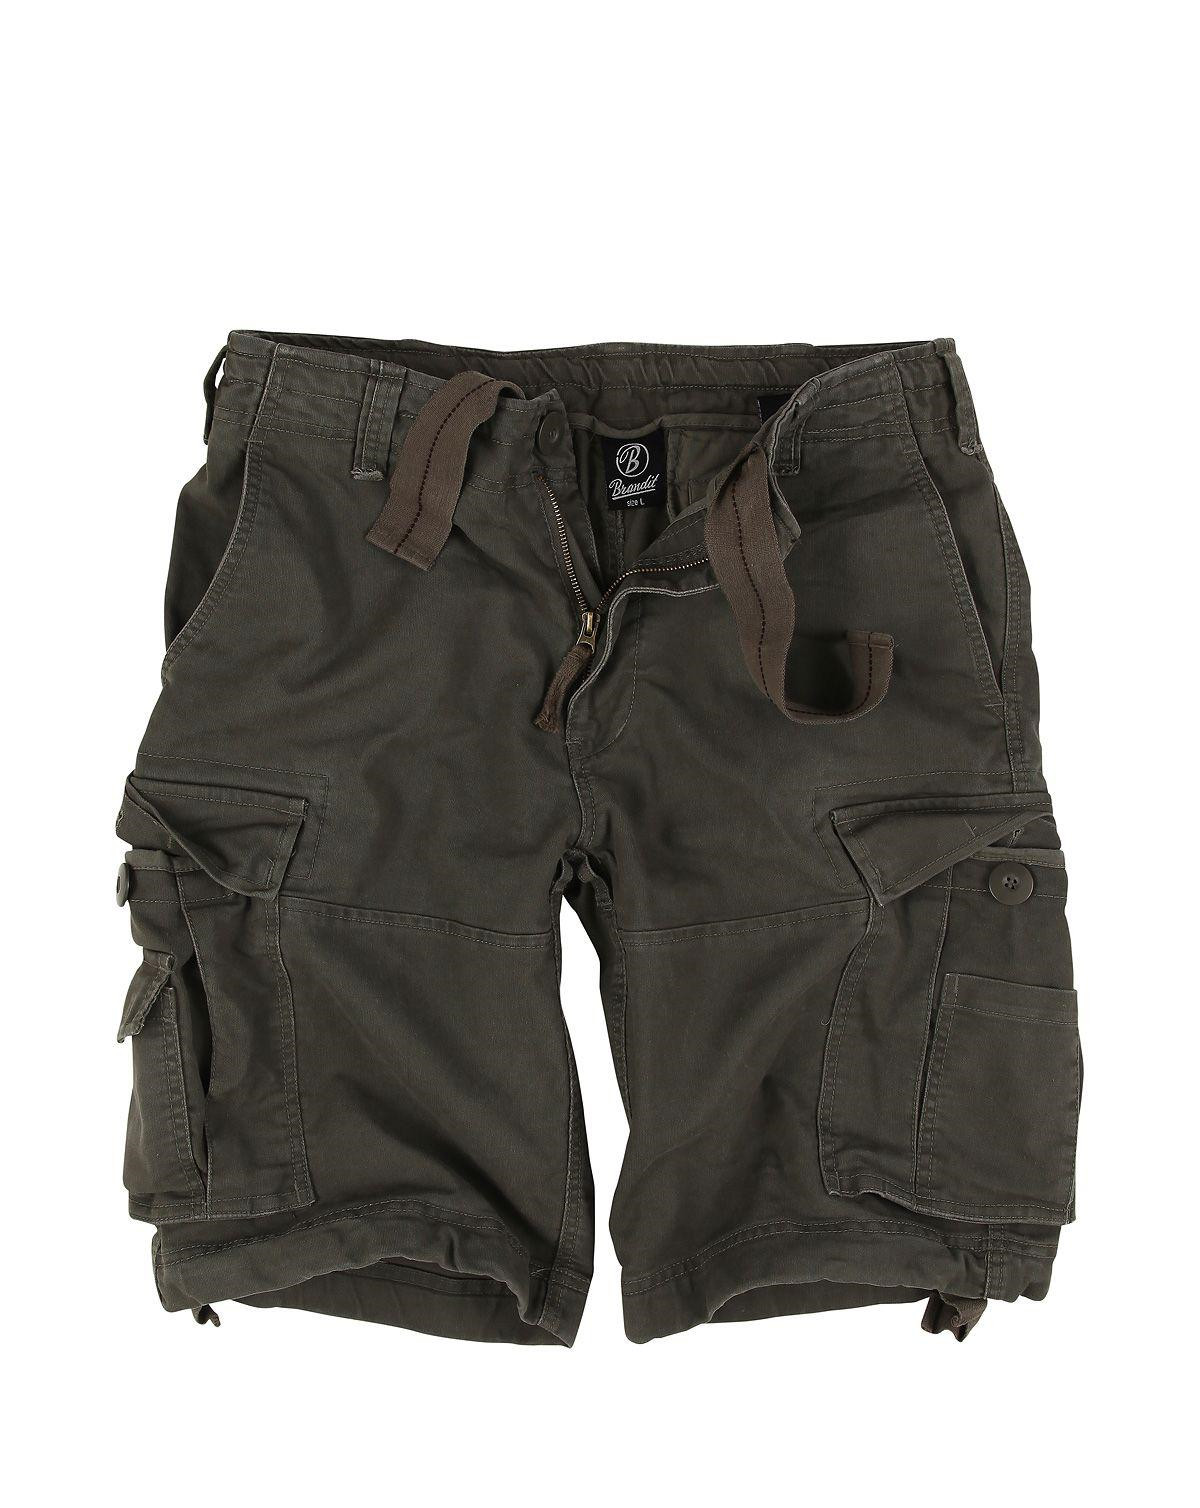 Brandit Vintage Shorts (Oliven, 7XL)